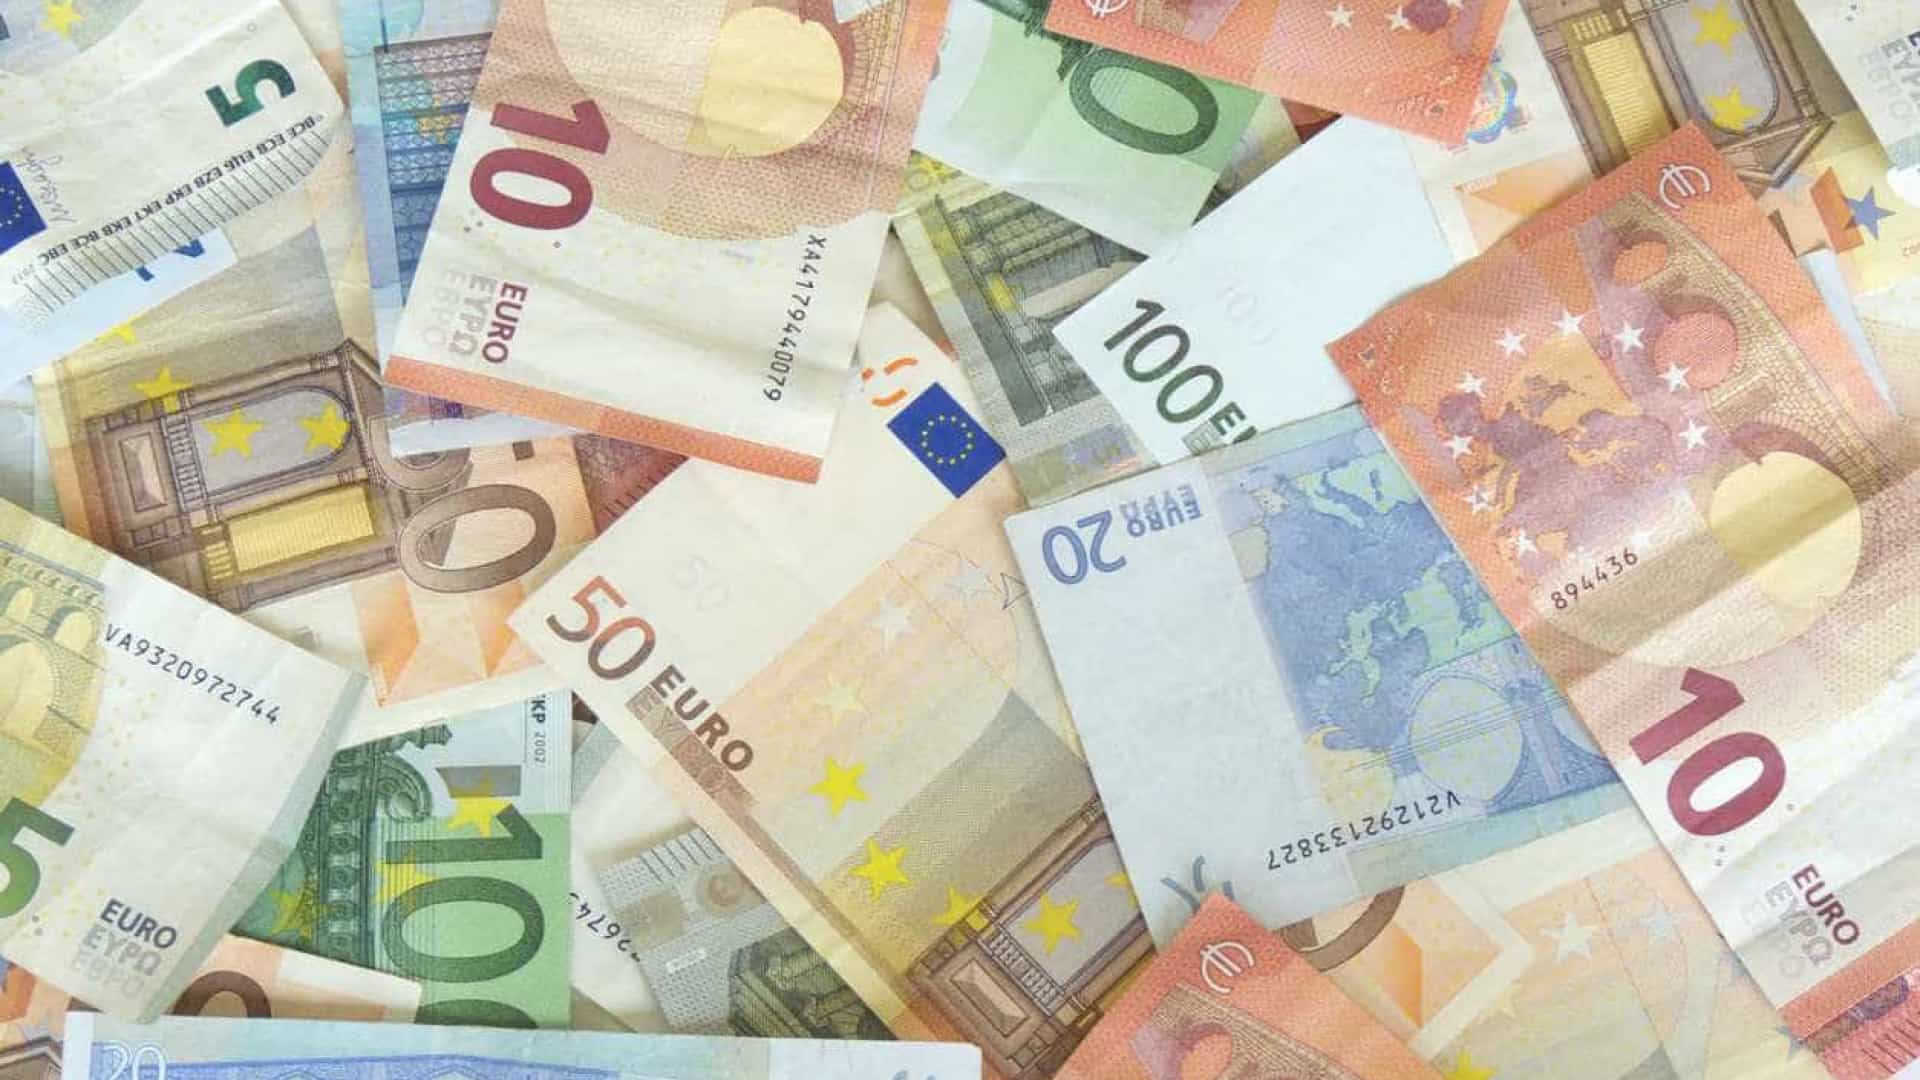 Евро сегодня в сумах. Евро на 04.08.2022. Пенсионеры евро деньги Сток.